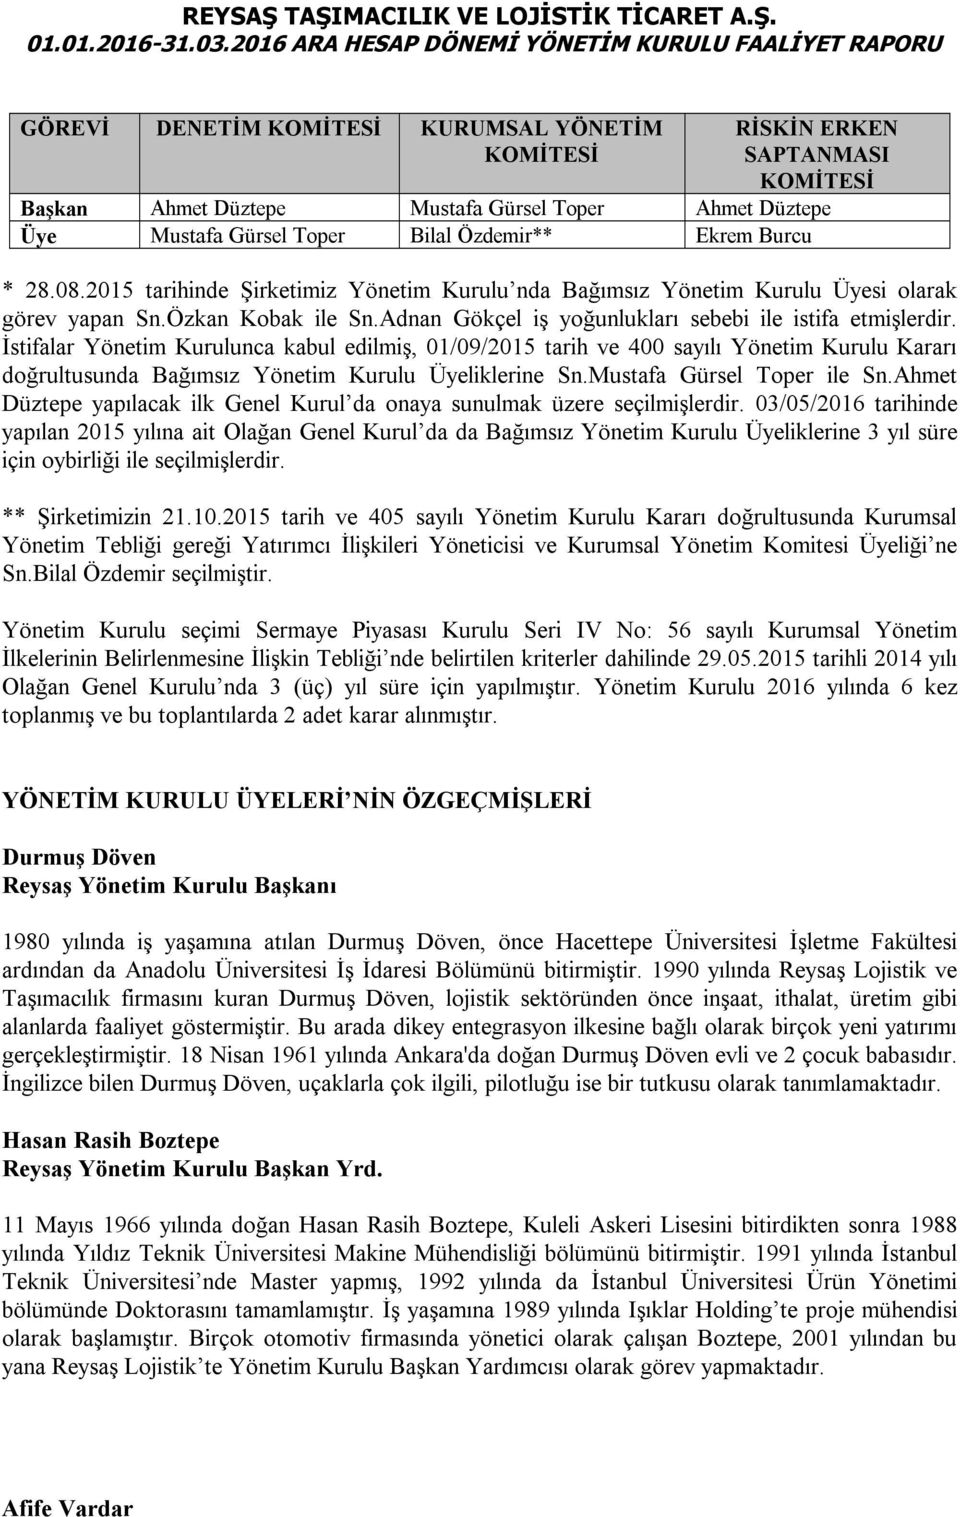 İstifalar Yönetim Kurulunca kabul edilmiş, 01/09/2015 tarih ve 400 sayılı Yönetim Kurulu Kararı doğrultusunda Bağımsız Yönetim Kurulu Üyeliklerine Sn.Mustafa Gürsel Toper ile Sn.